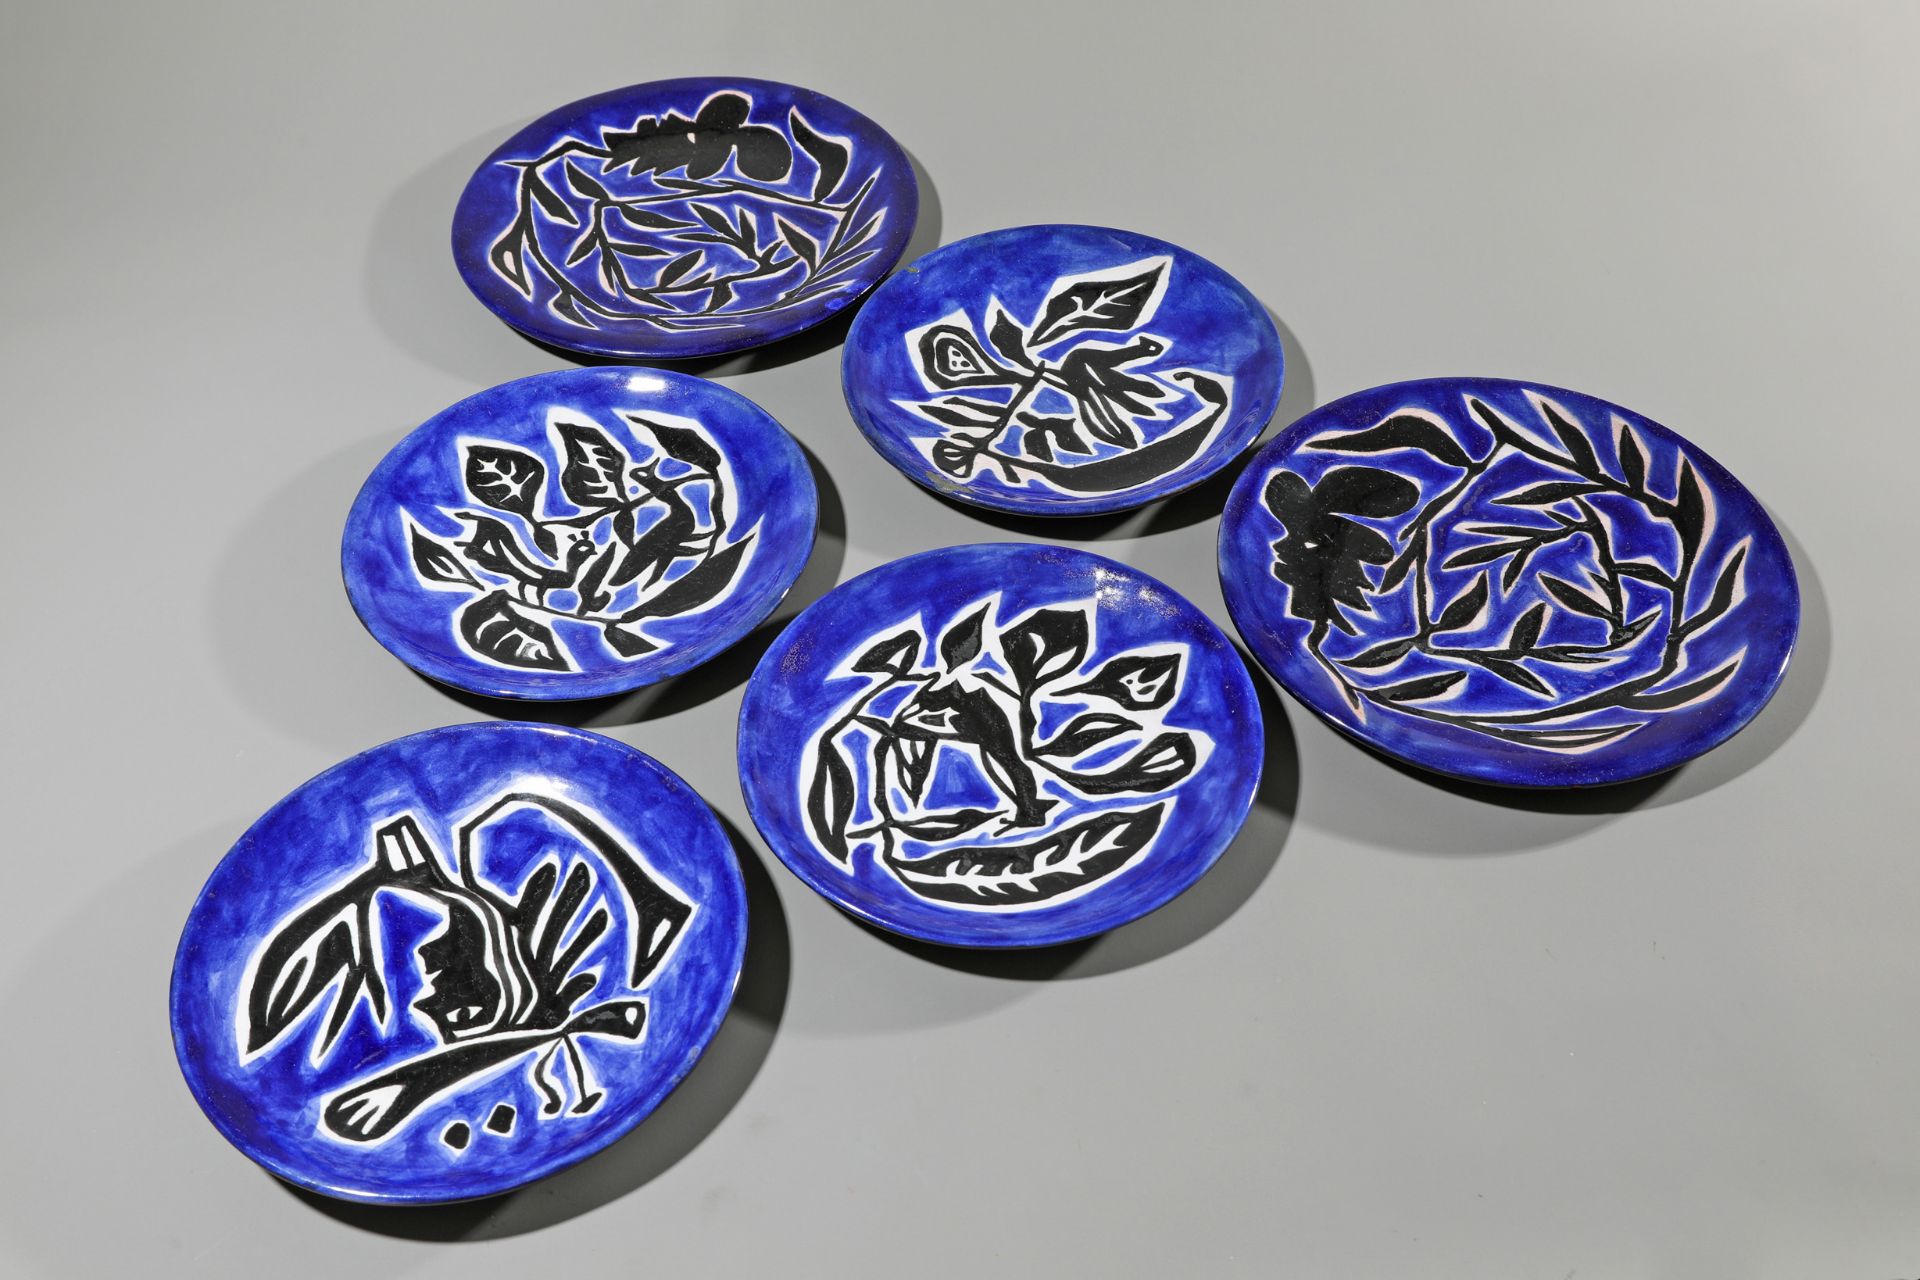 Jean Lurçat, 6 Artist Plates, ceramics